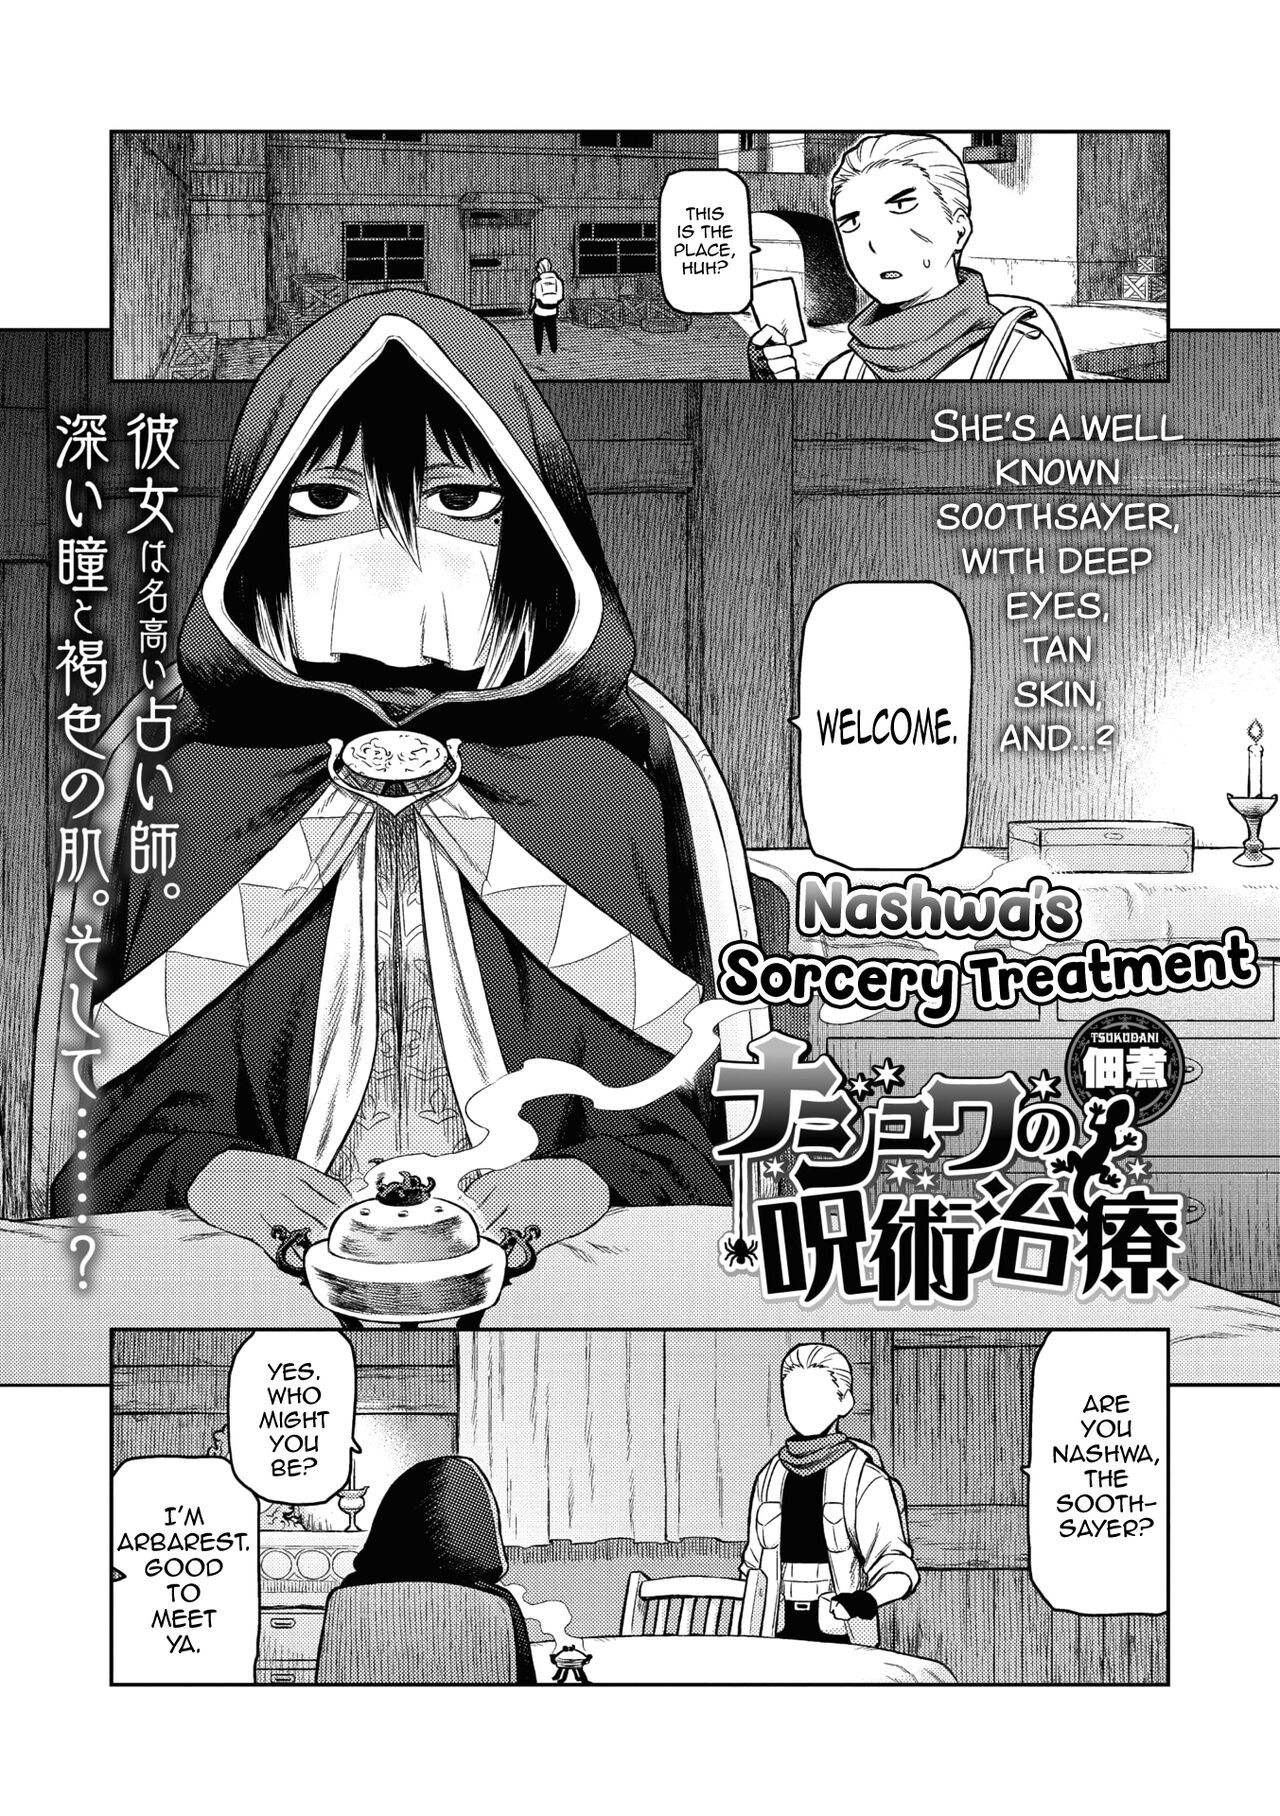 Nashwa no Jujutsu Chiryou + Omake by "Tsukudani" - #174903 - Read hentai Manga online for free at Cartoon Porn